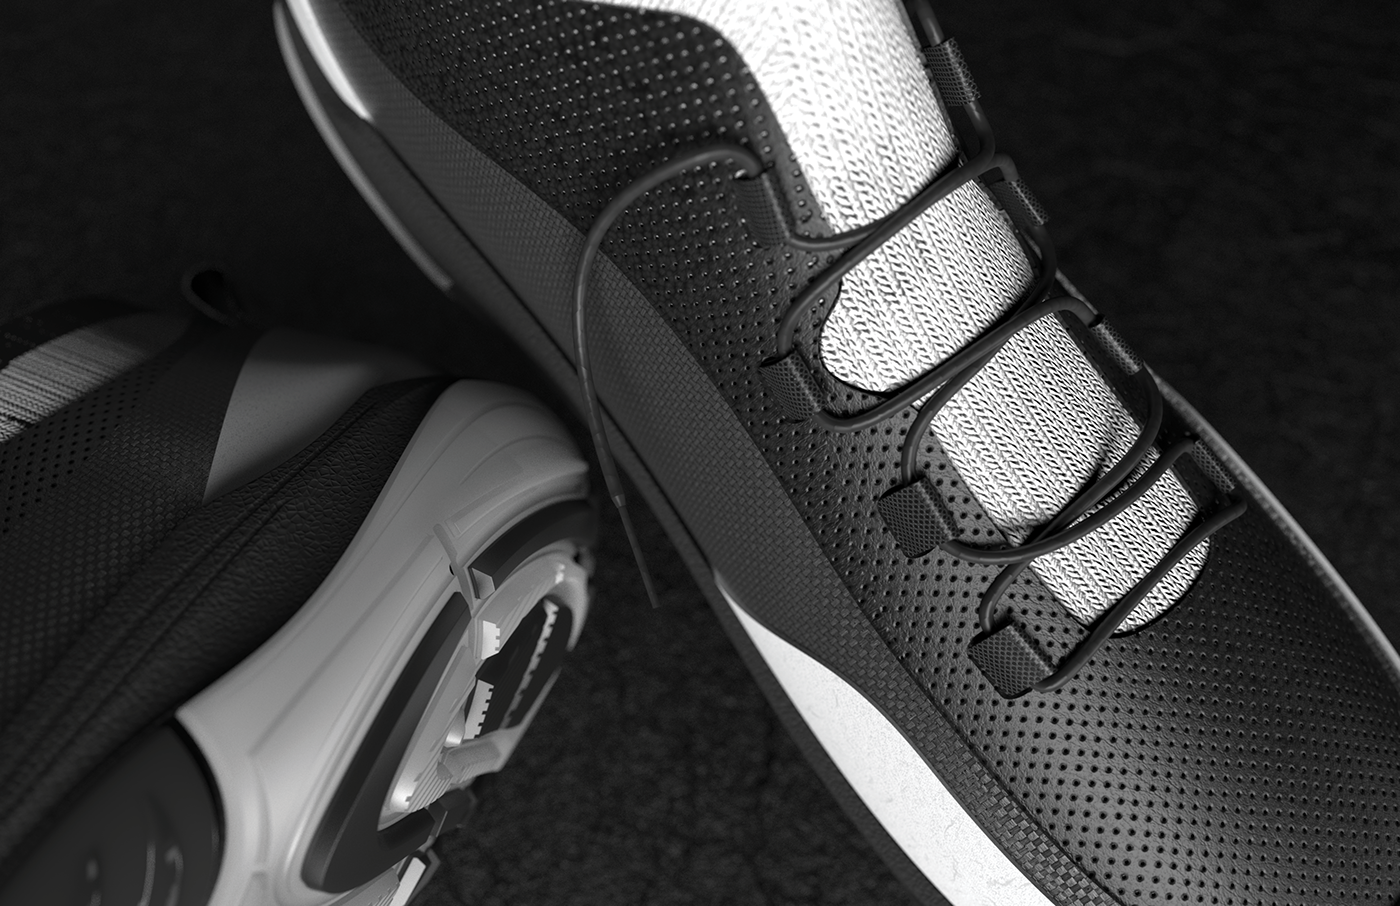 footwear trailrunning cad Solidworks keyshot concept